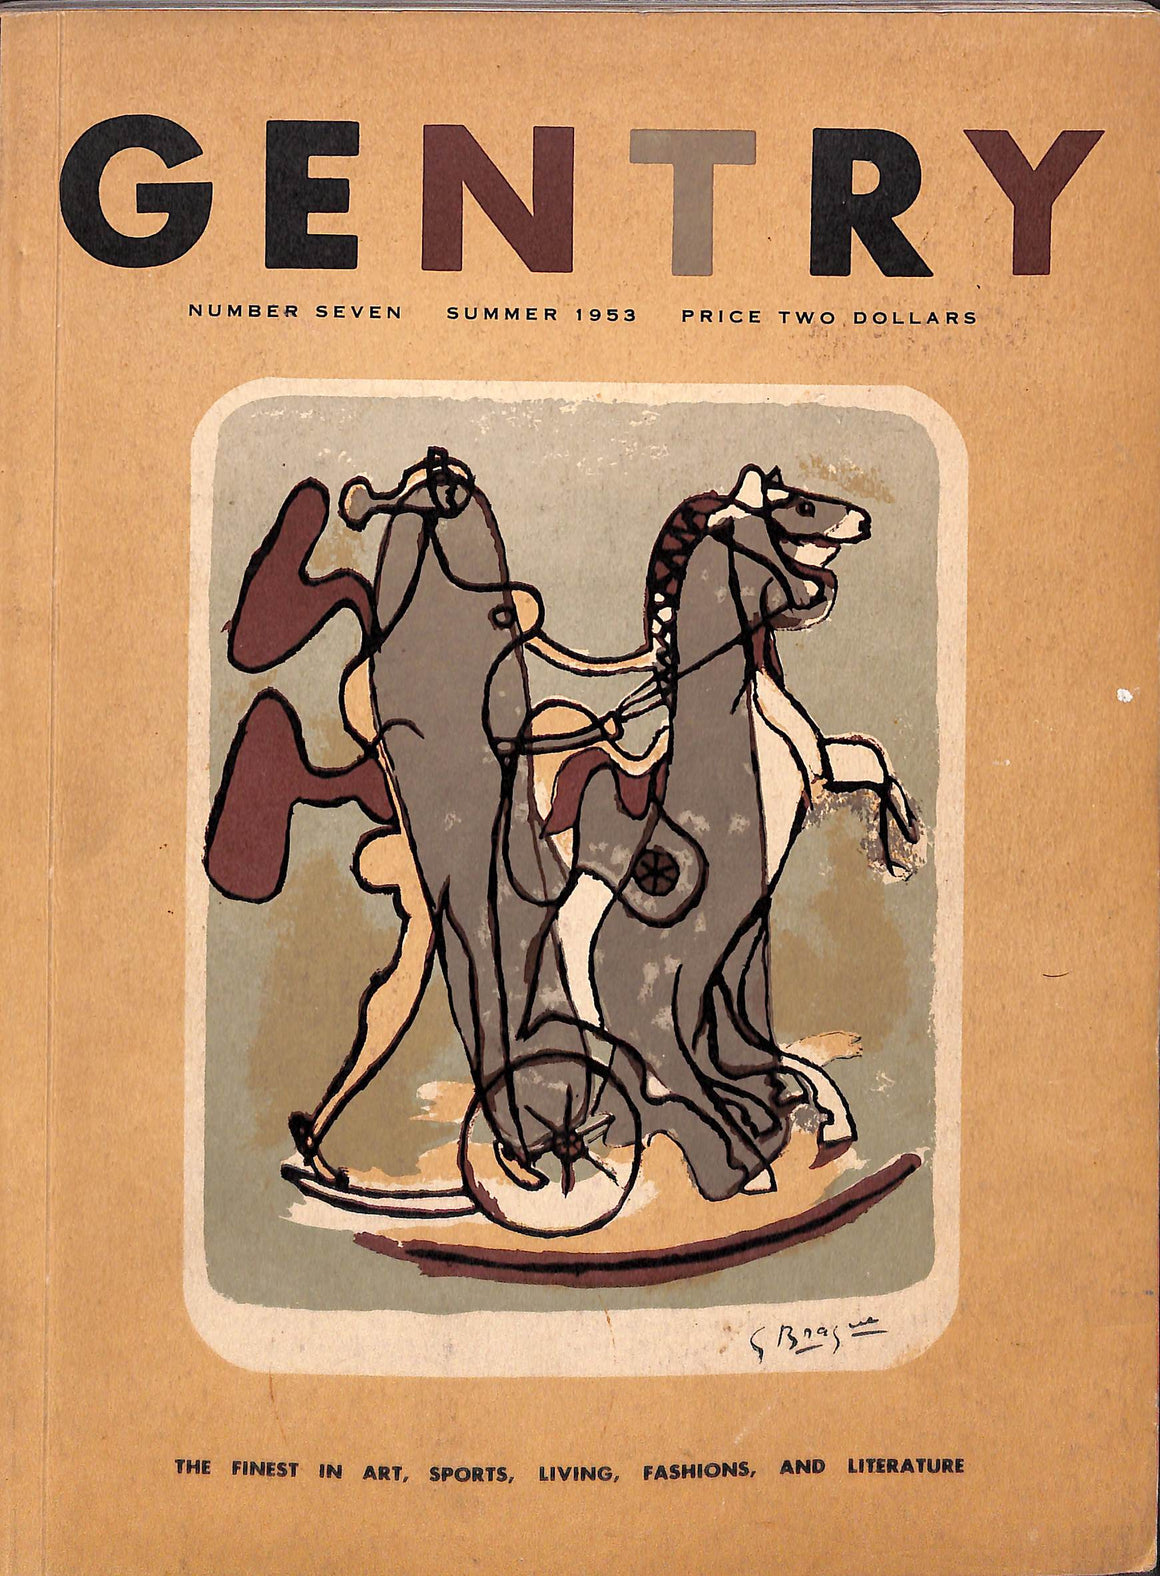 "Gentry Number Seven Summer 1953"